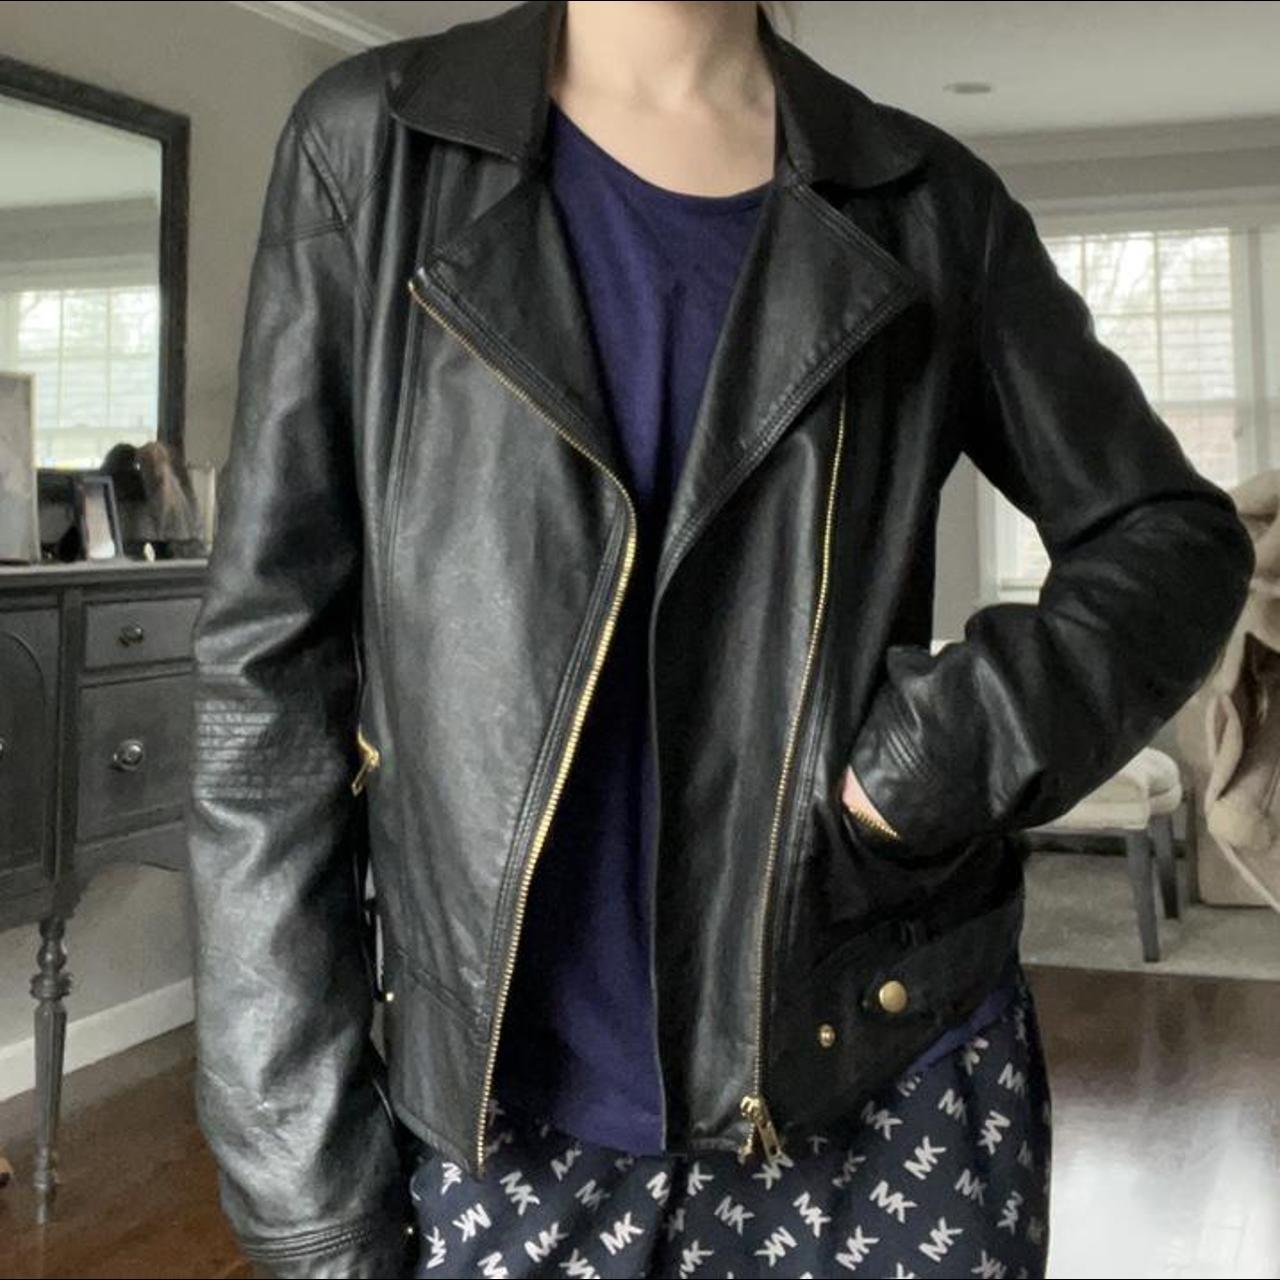 Product Image 1 - Adorable grunge leather jacket 
Similar